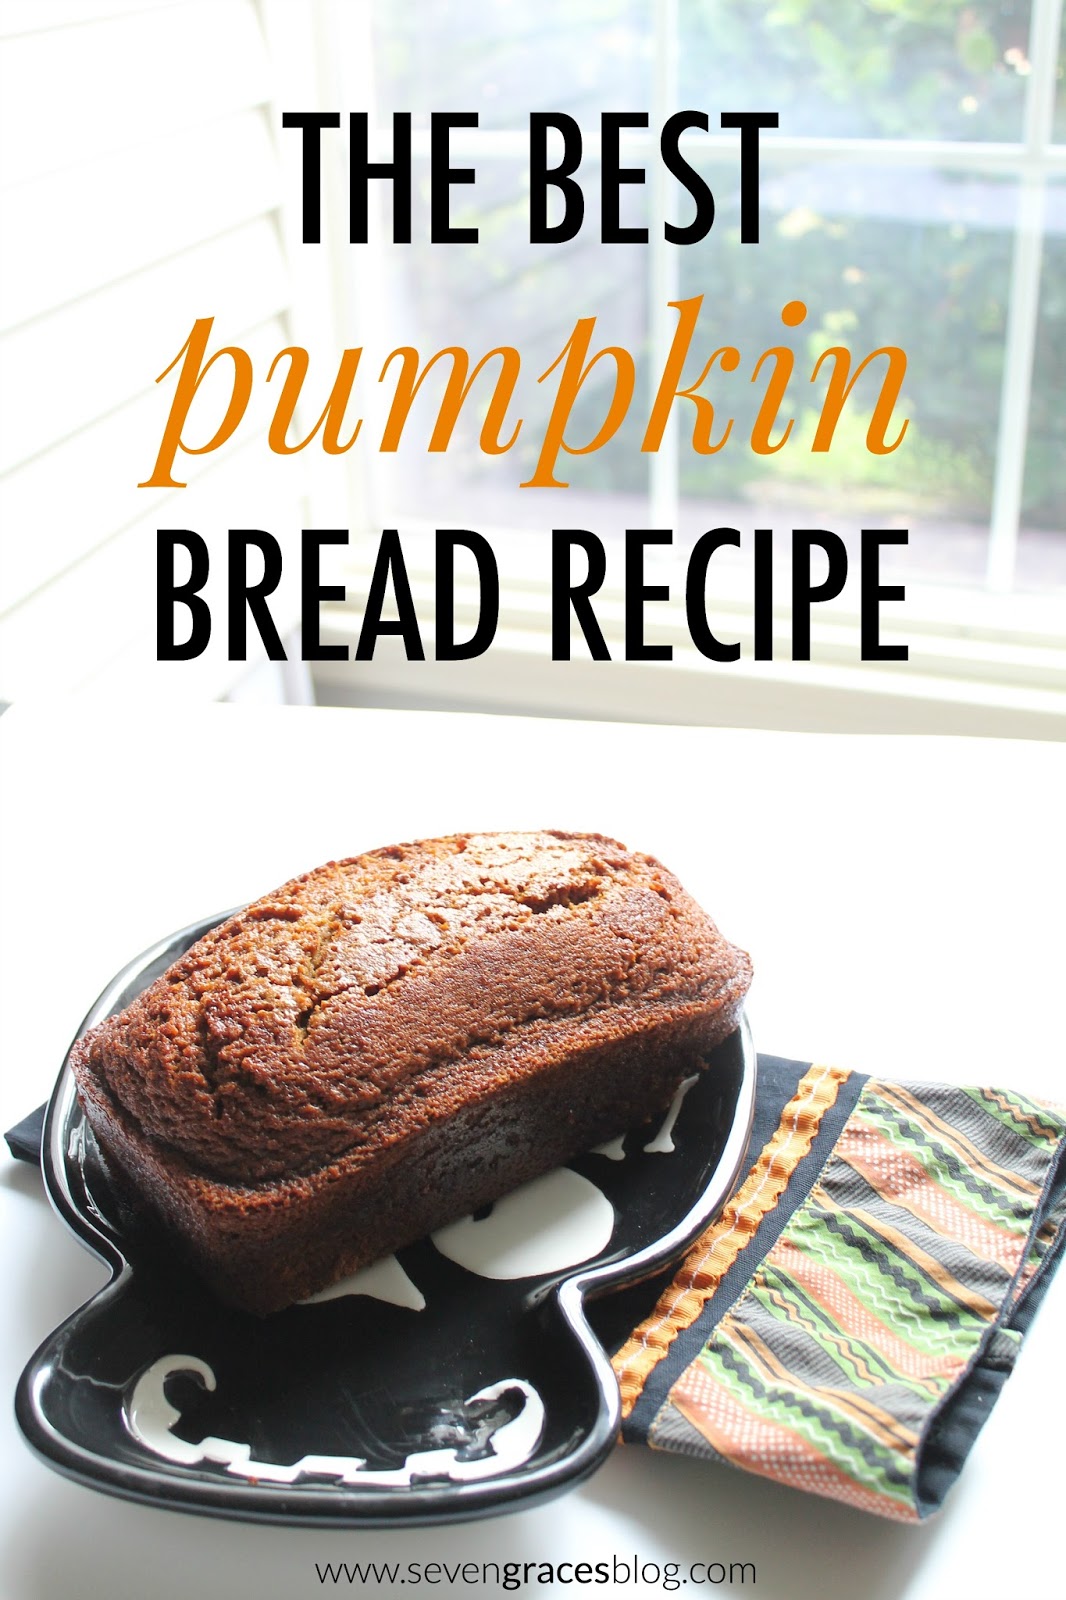 The best pumpkin bread recipe ever!